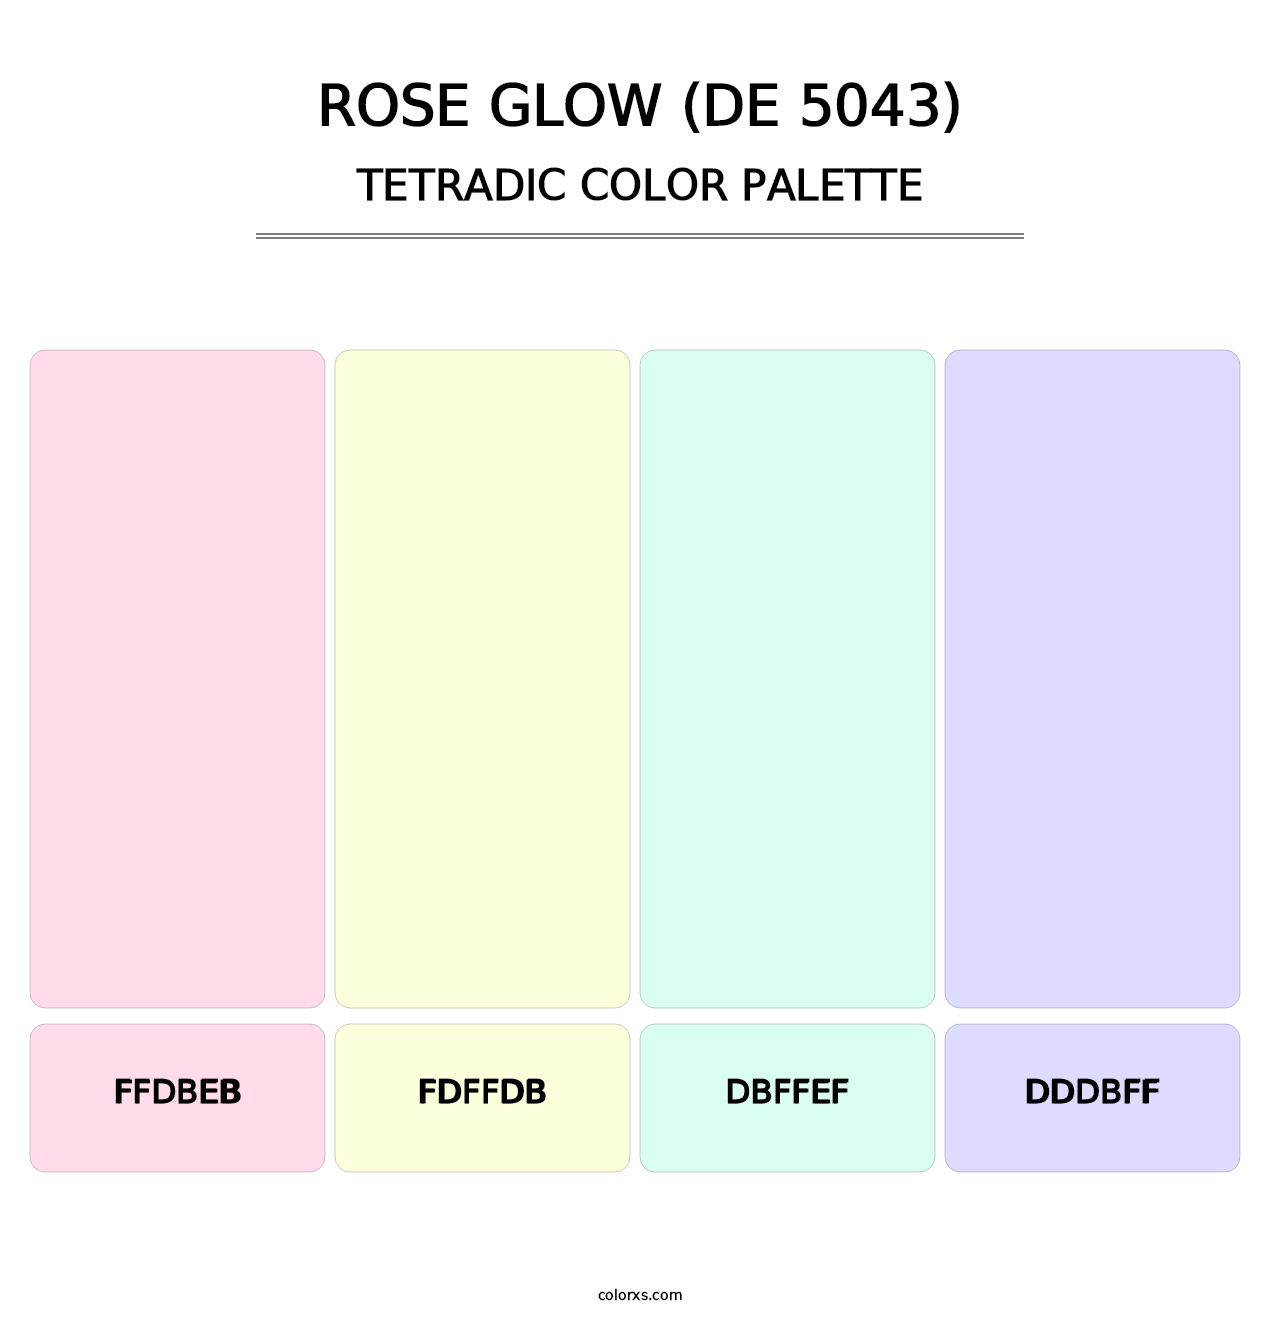 Rose Glow (DE 5043) - Tetradic Color Palette